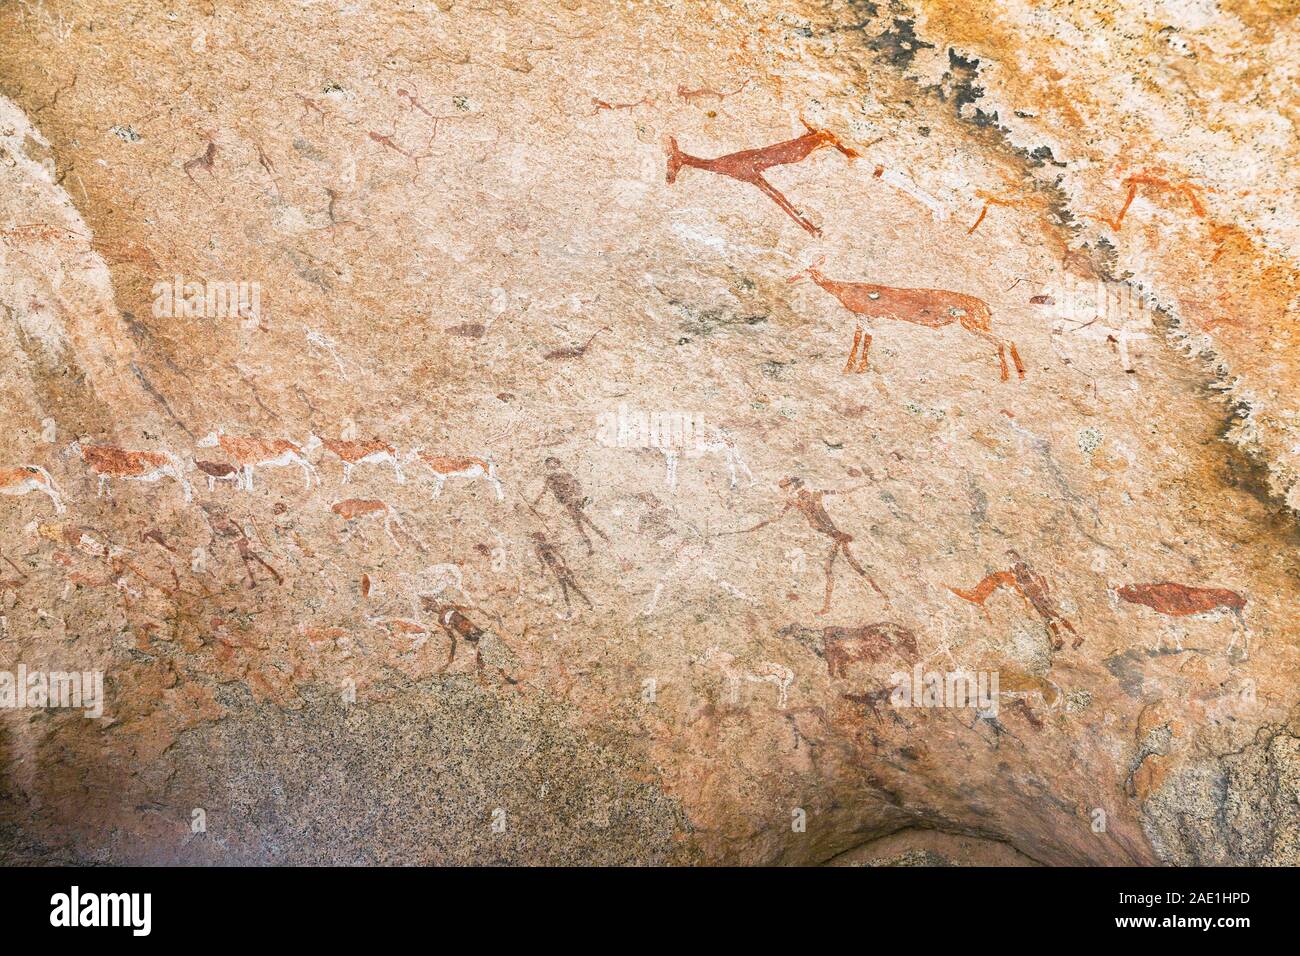 Dipinto di roccia di Ancient Sun 'Maack's Shelter' a Tsisab Ravine nel Monte Brandberg, arte rupestre dei Boscimani, deserto del Namib, Namibia, Africa Meridionale, Africa Foto Stock